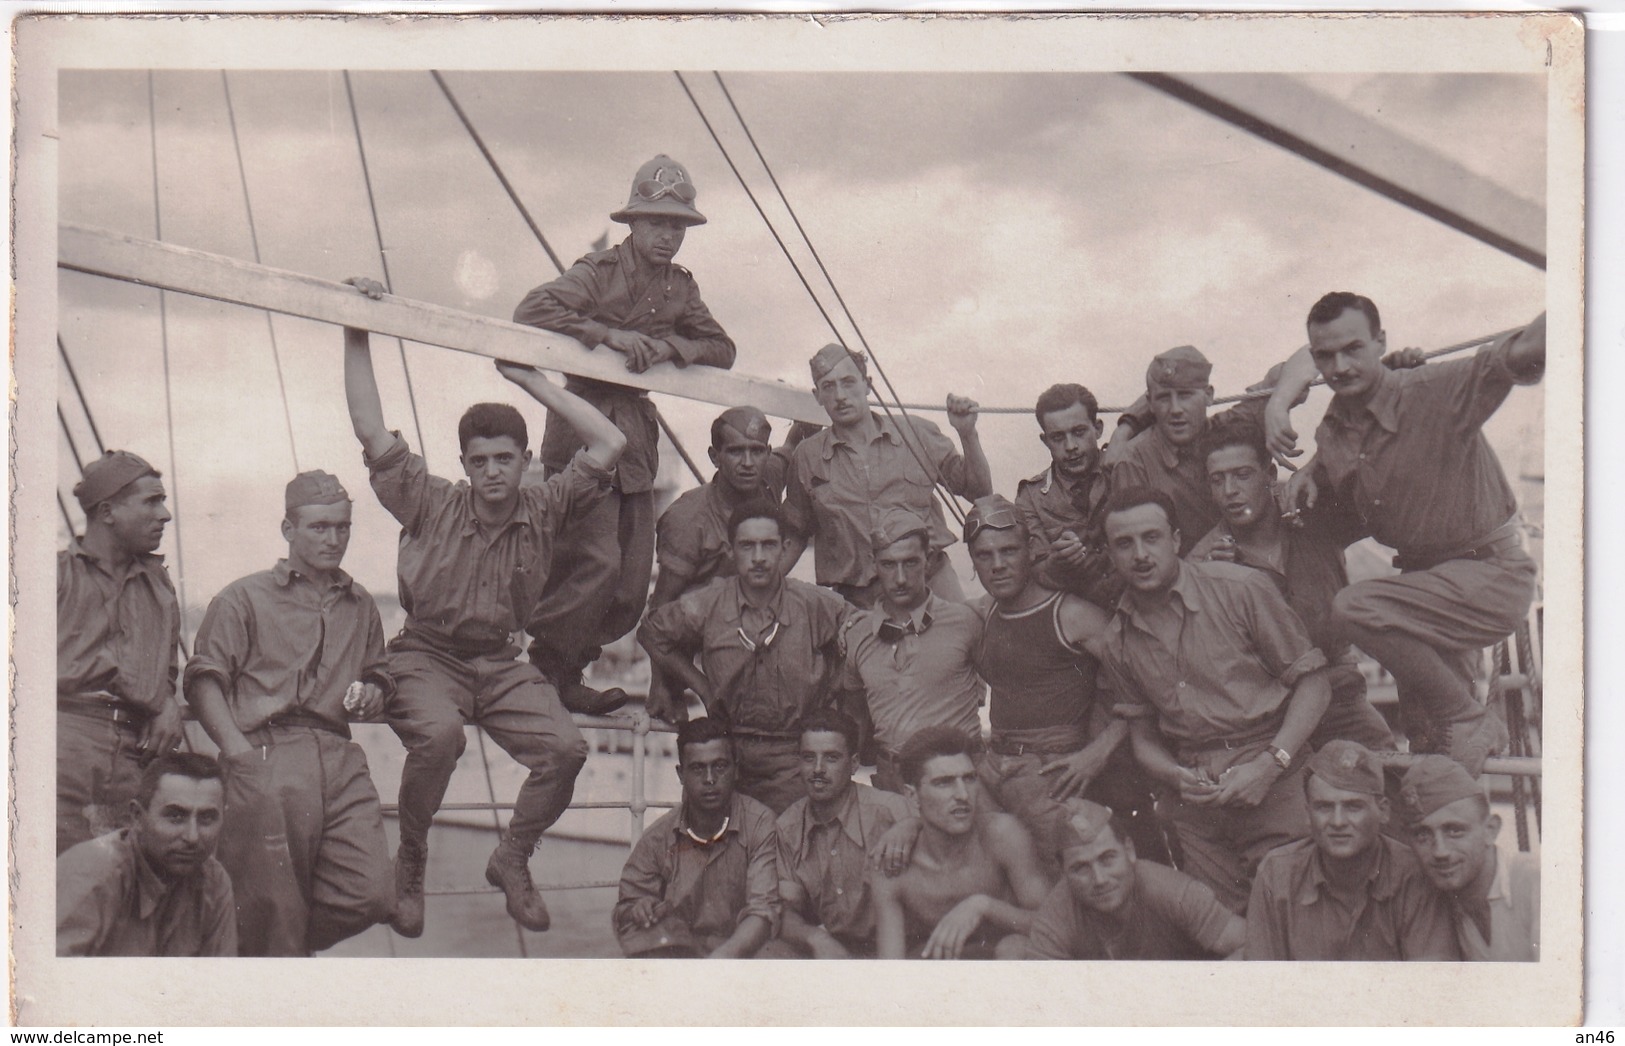 Sulla Nave Per Tripoli-Bella Foto Cartolina Postale-Militari Nella Guerra D'Africa-Integra E Originale Al 100%an2 - Fotografía